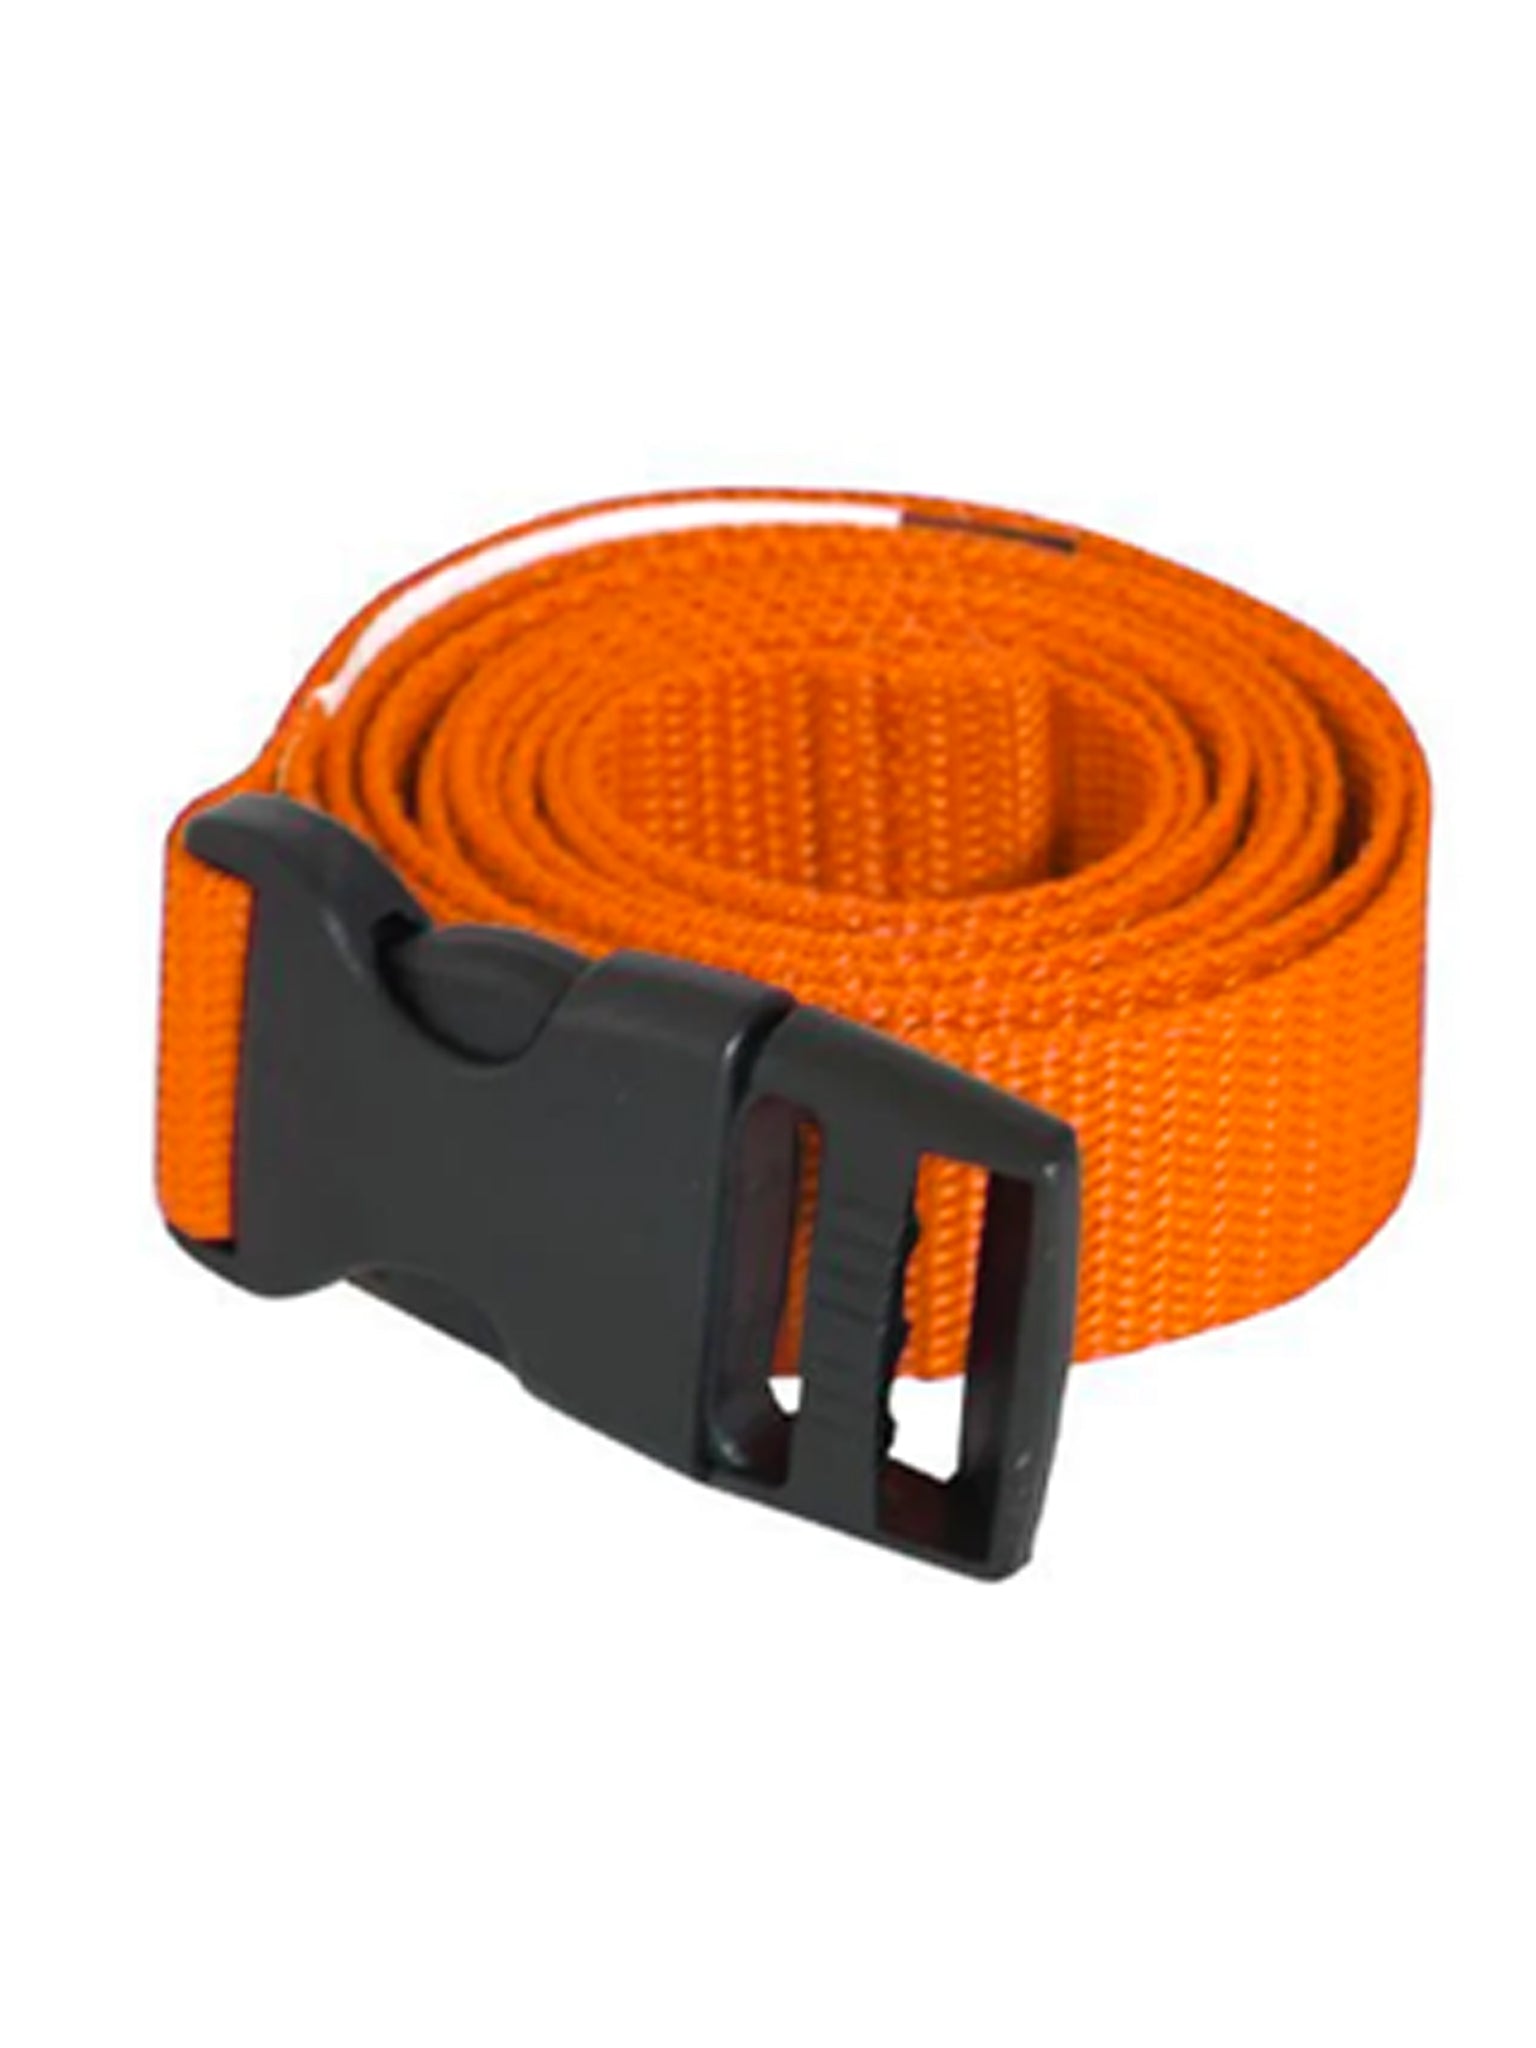 Replacement Strap for Aquafitness Waist Belt